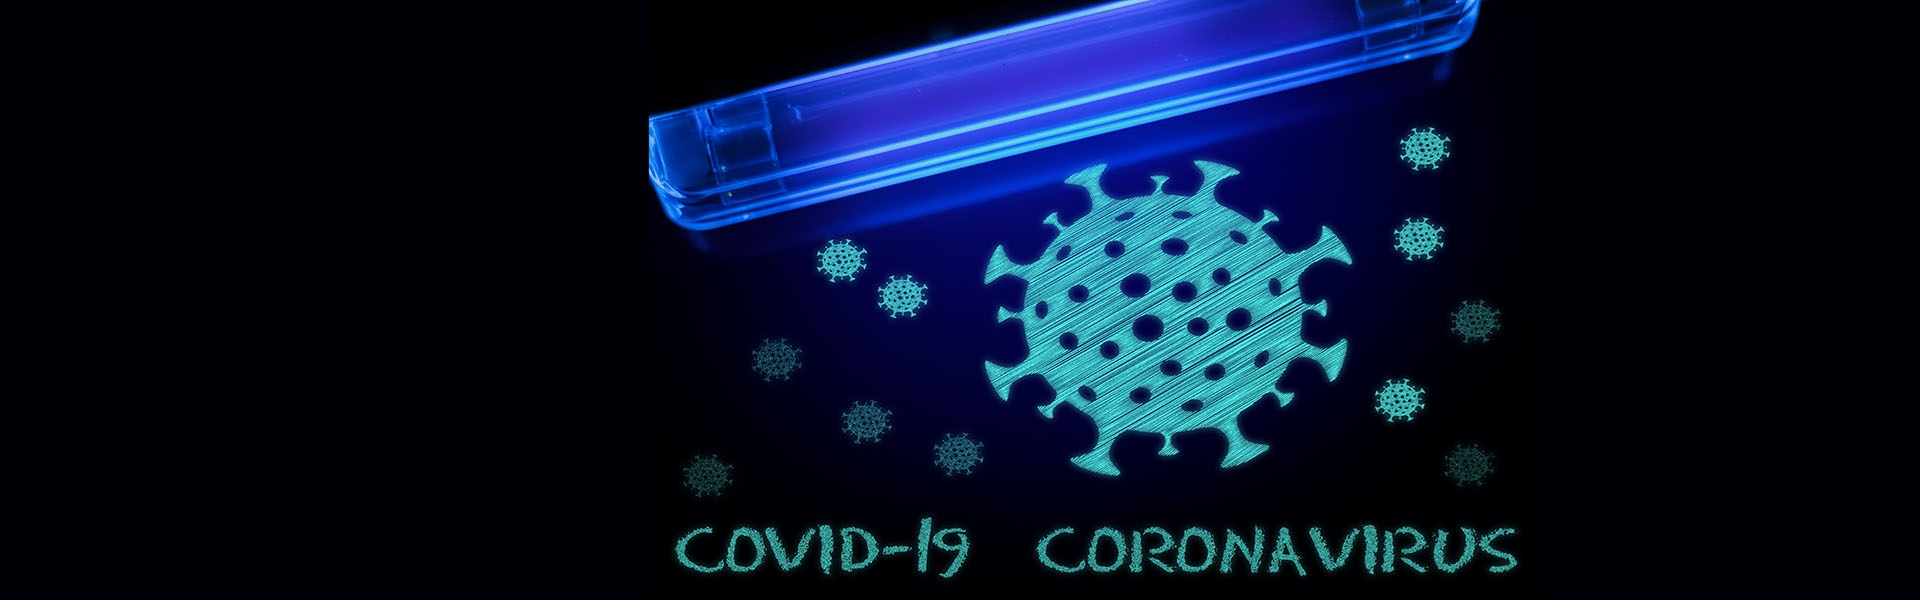 Invloed van UV-licht op micro-organismen in de lucht / COVID19